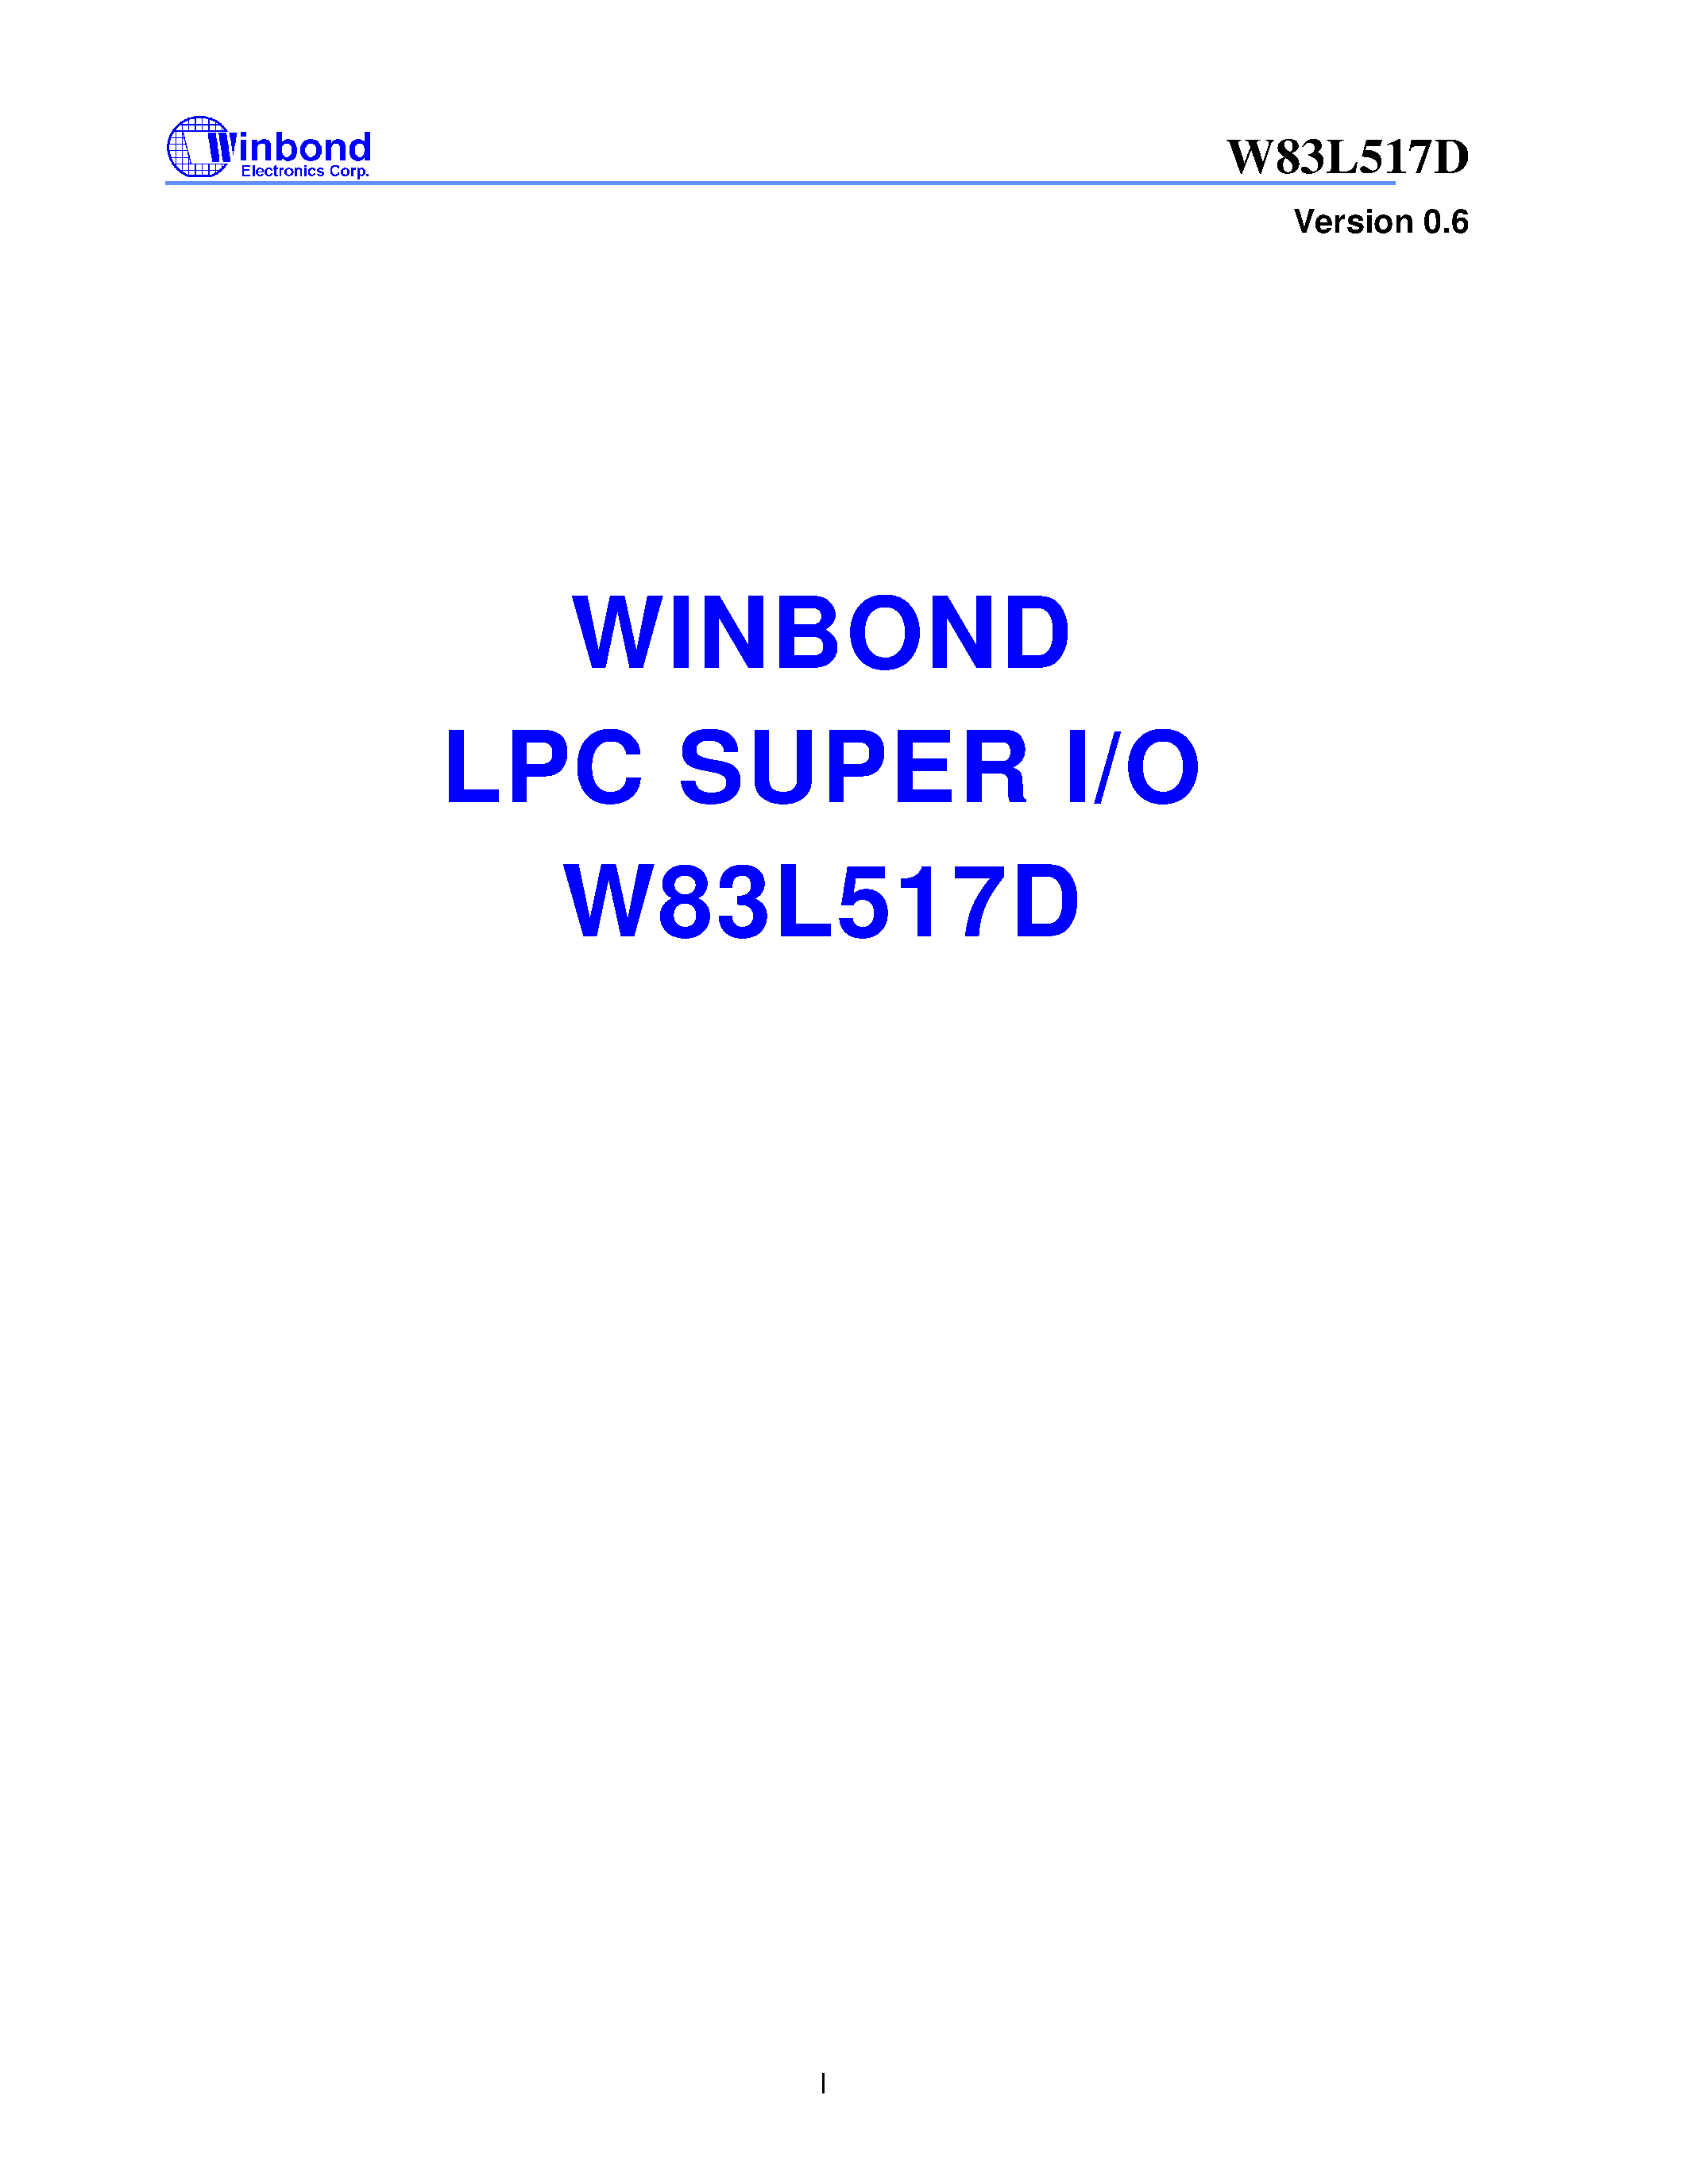 Даташит W83L517D - LPC SUPER I/O страница 1